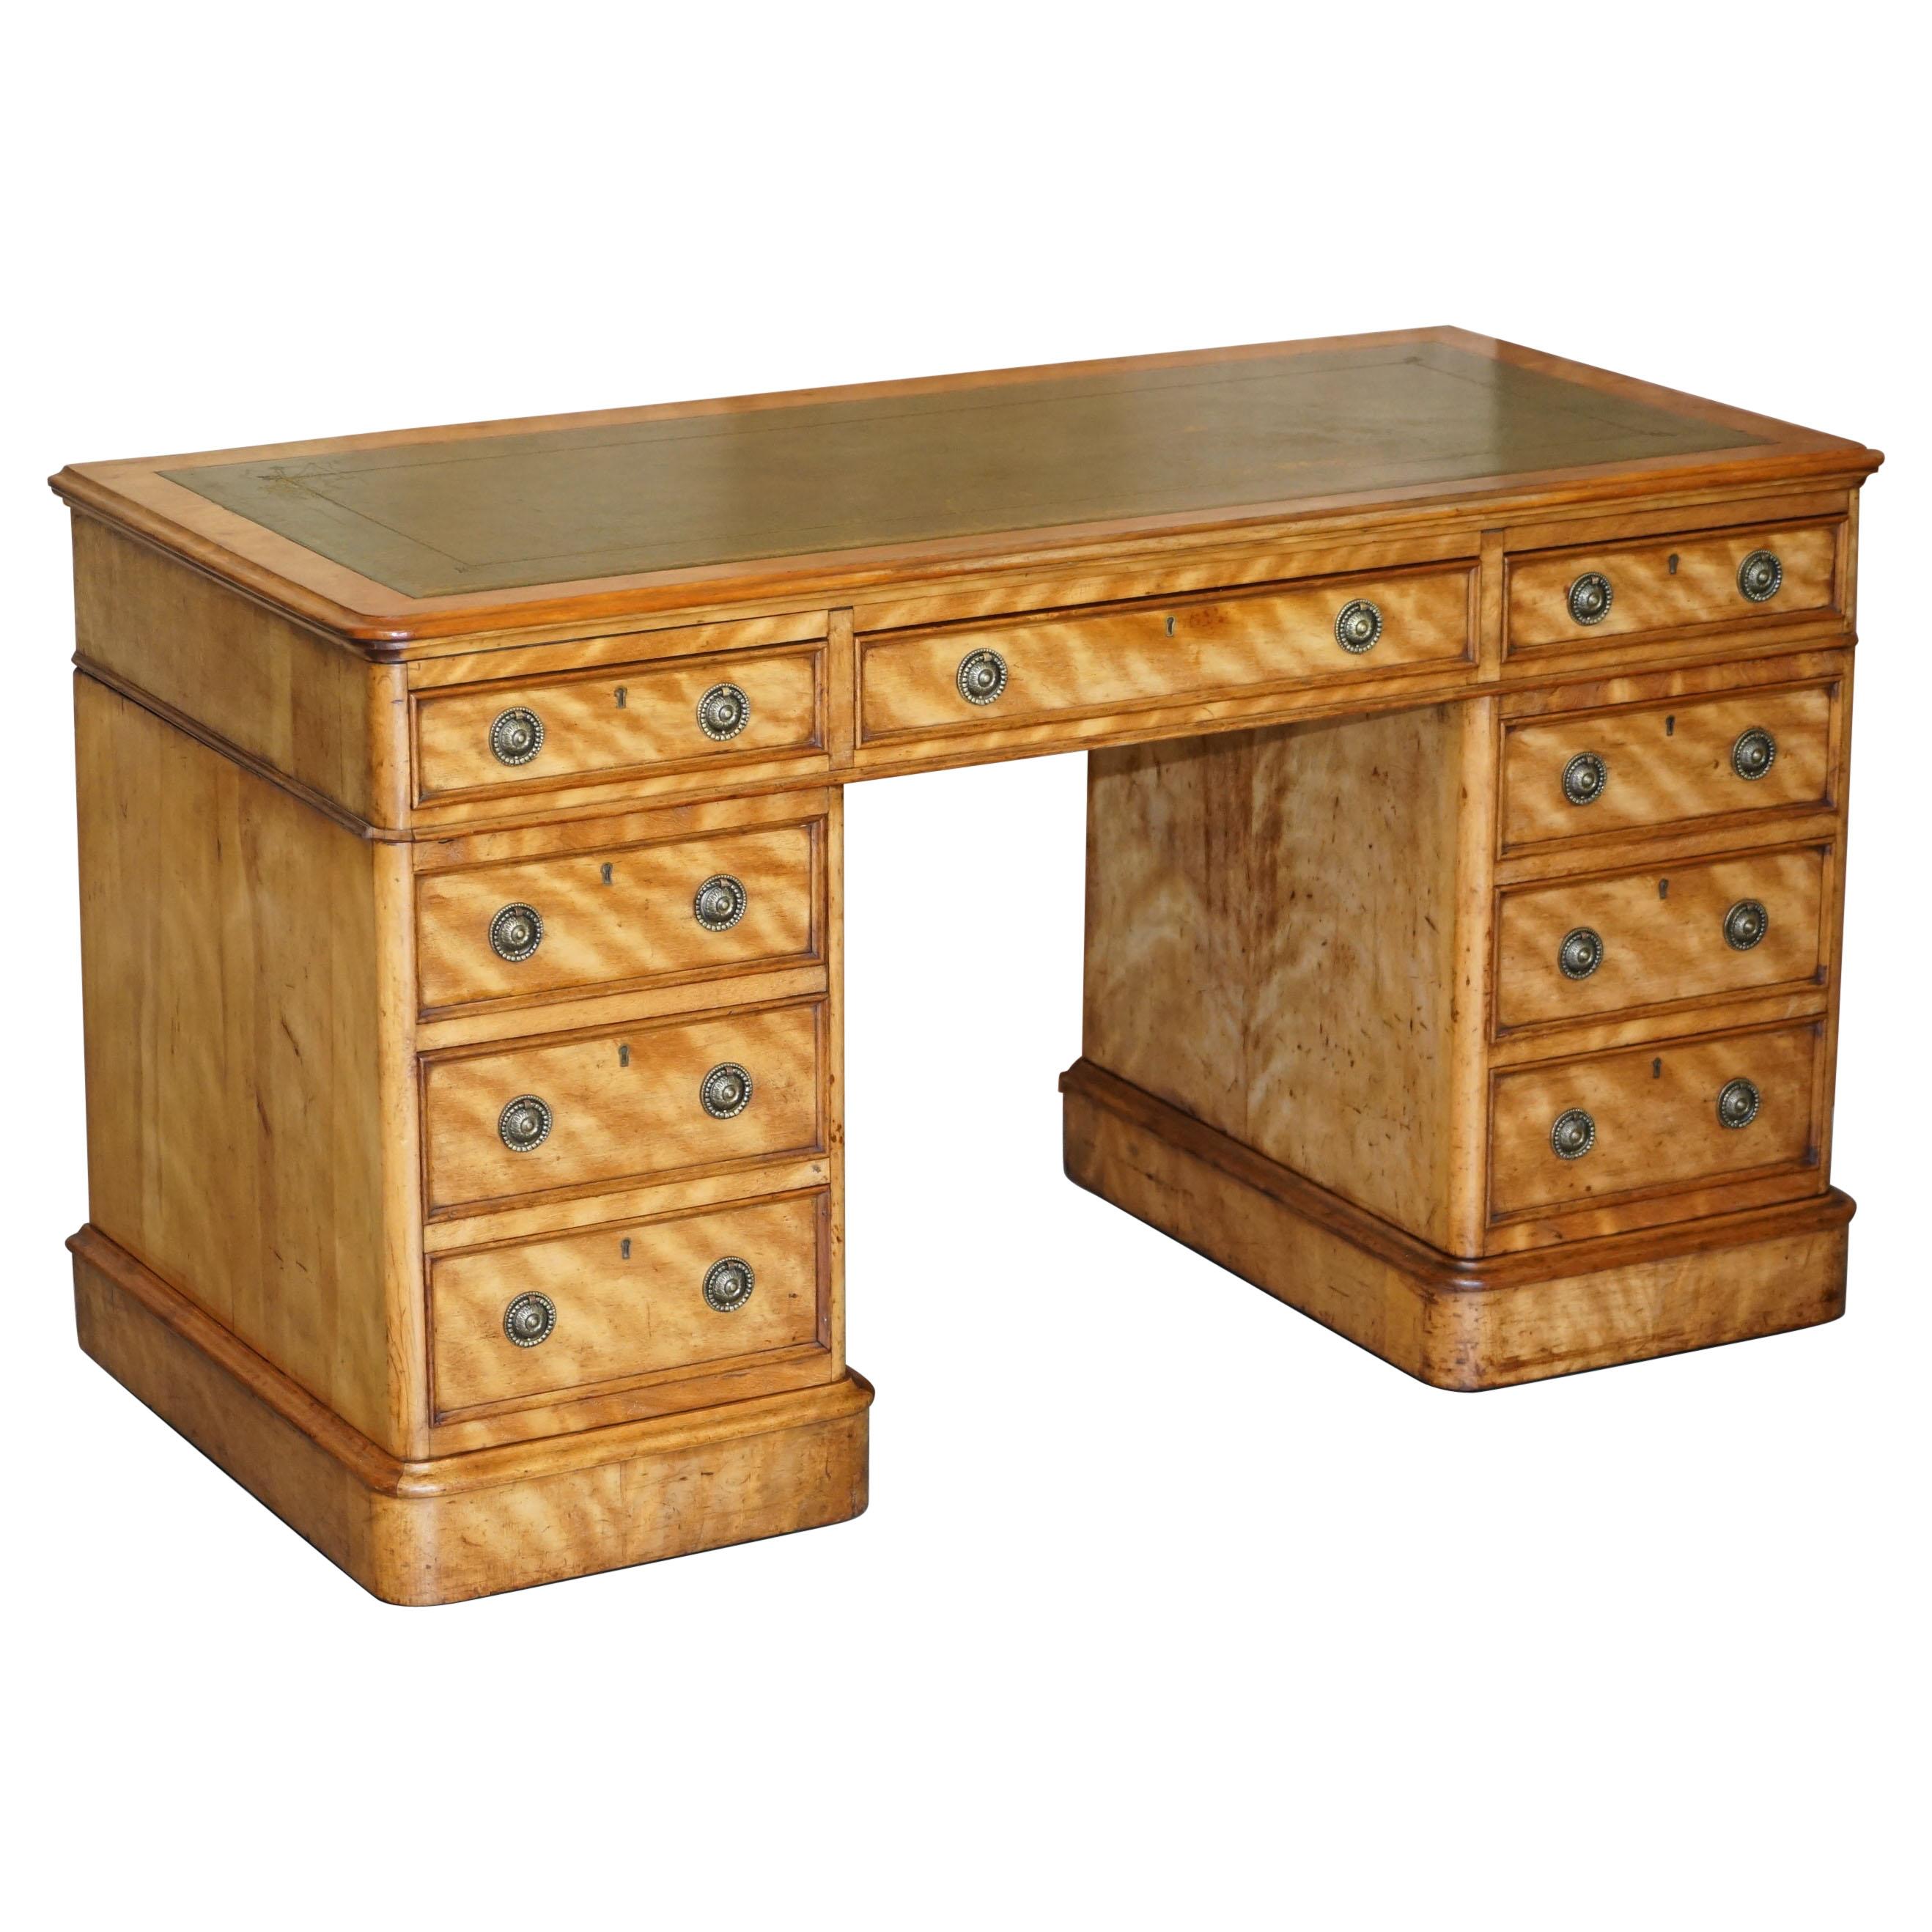 Antiquité circa 1830-1850 James Winter & Sons London Satinwood Green Leather Desk (Bureau en bois satiné et cuir vert)